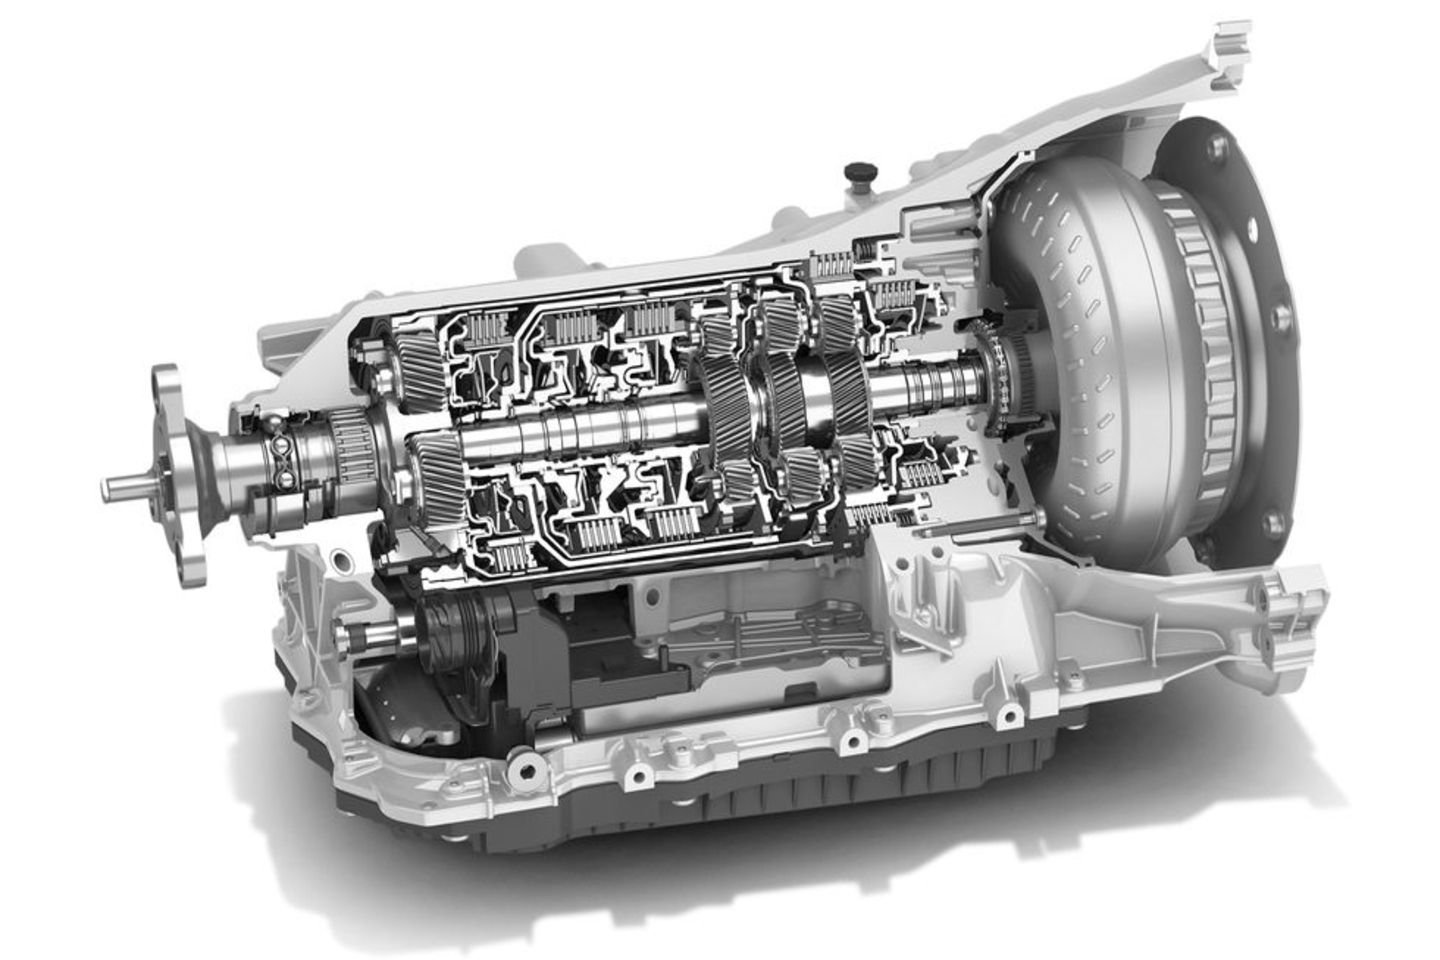 Ein Ausschnitt aus dem Innenleben eines ZF 8 Getriebesystems mit Zahnrädern und Kupplung